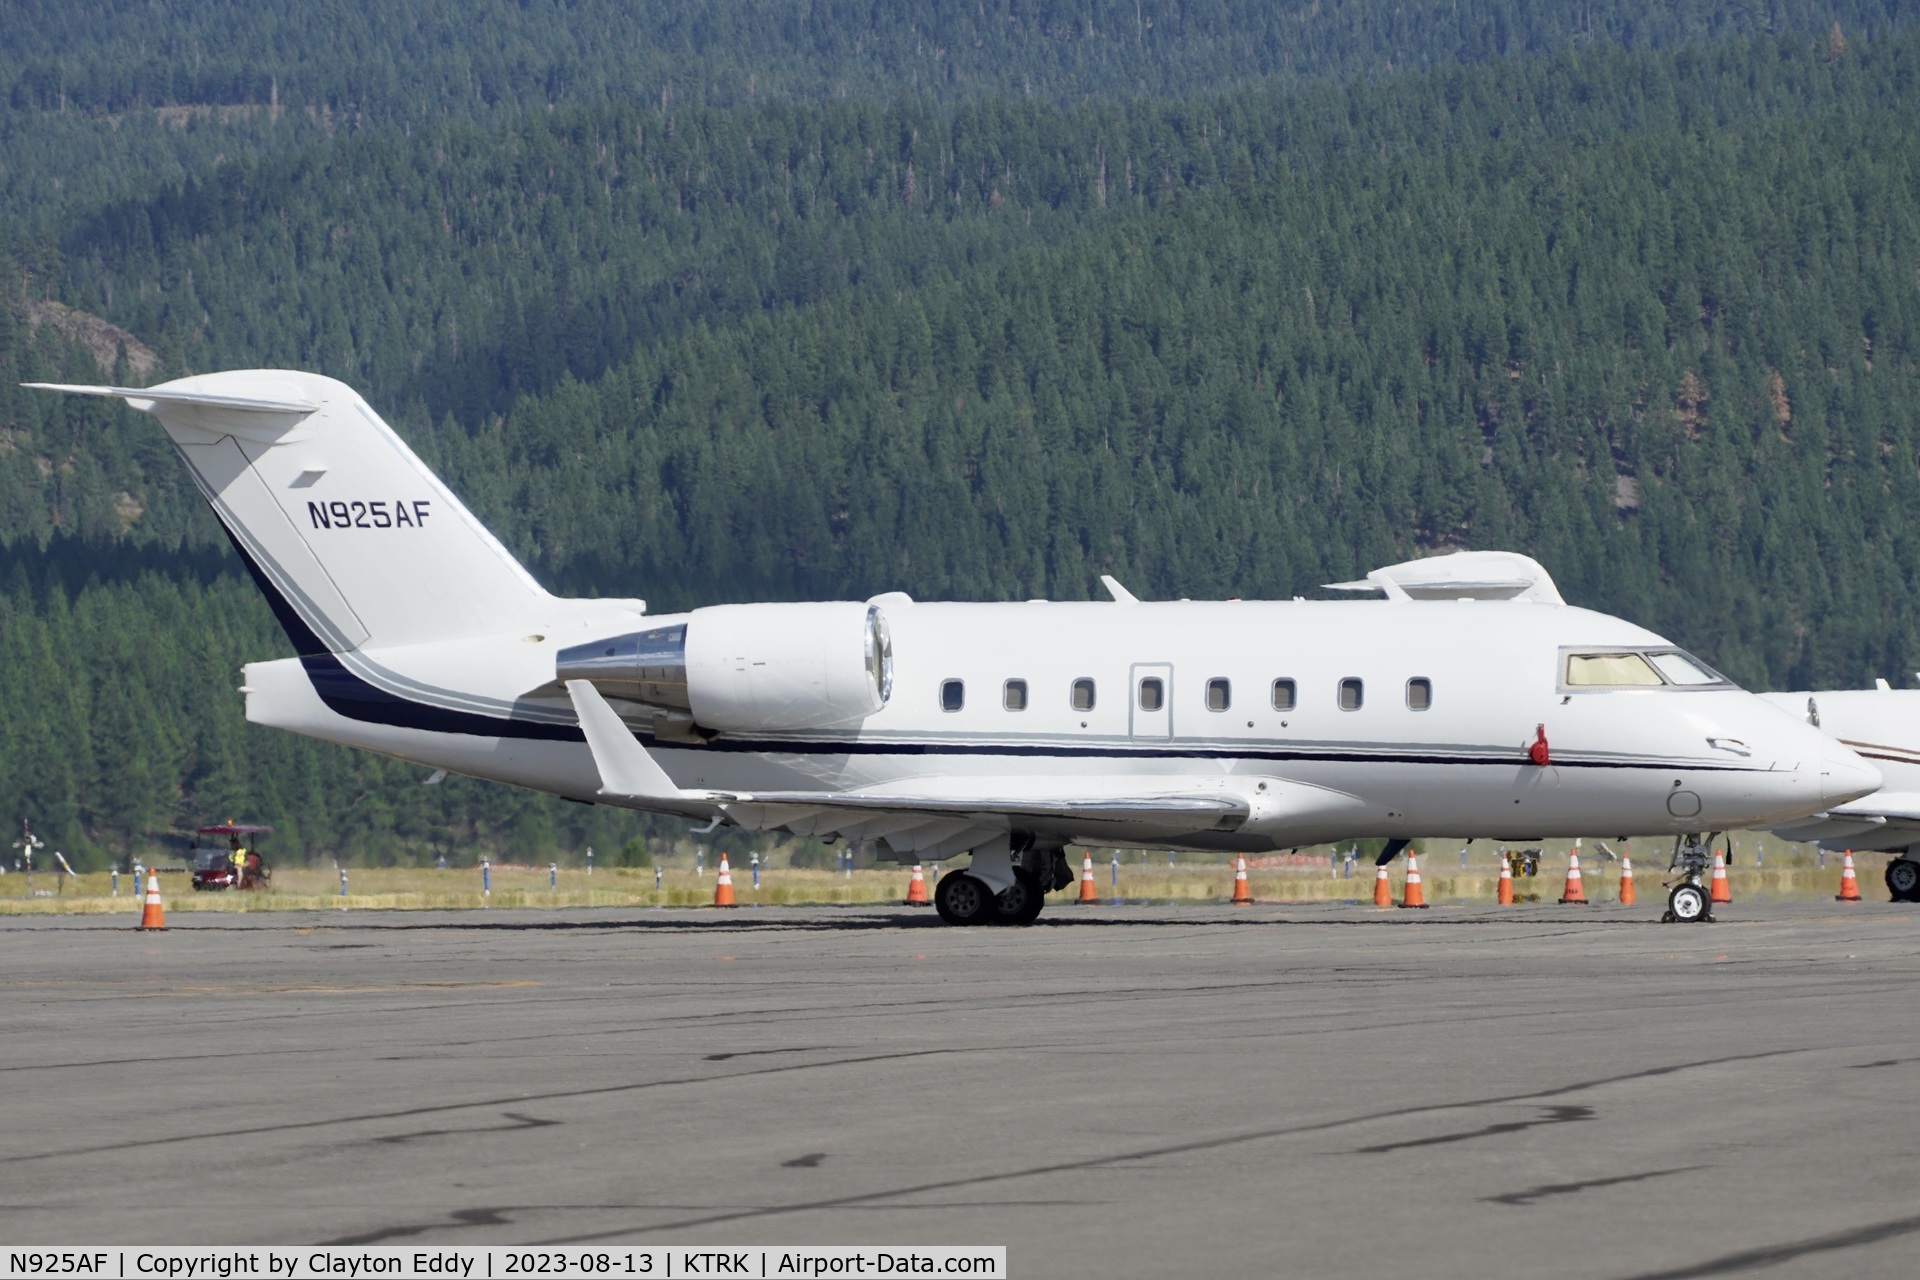 N925AF, 2002 Bombardier Inc. CL-600-2B16 C/N 5524, Truckee Tahoe airport in California 2023.